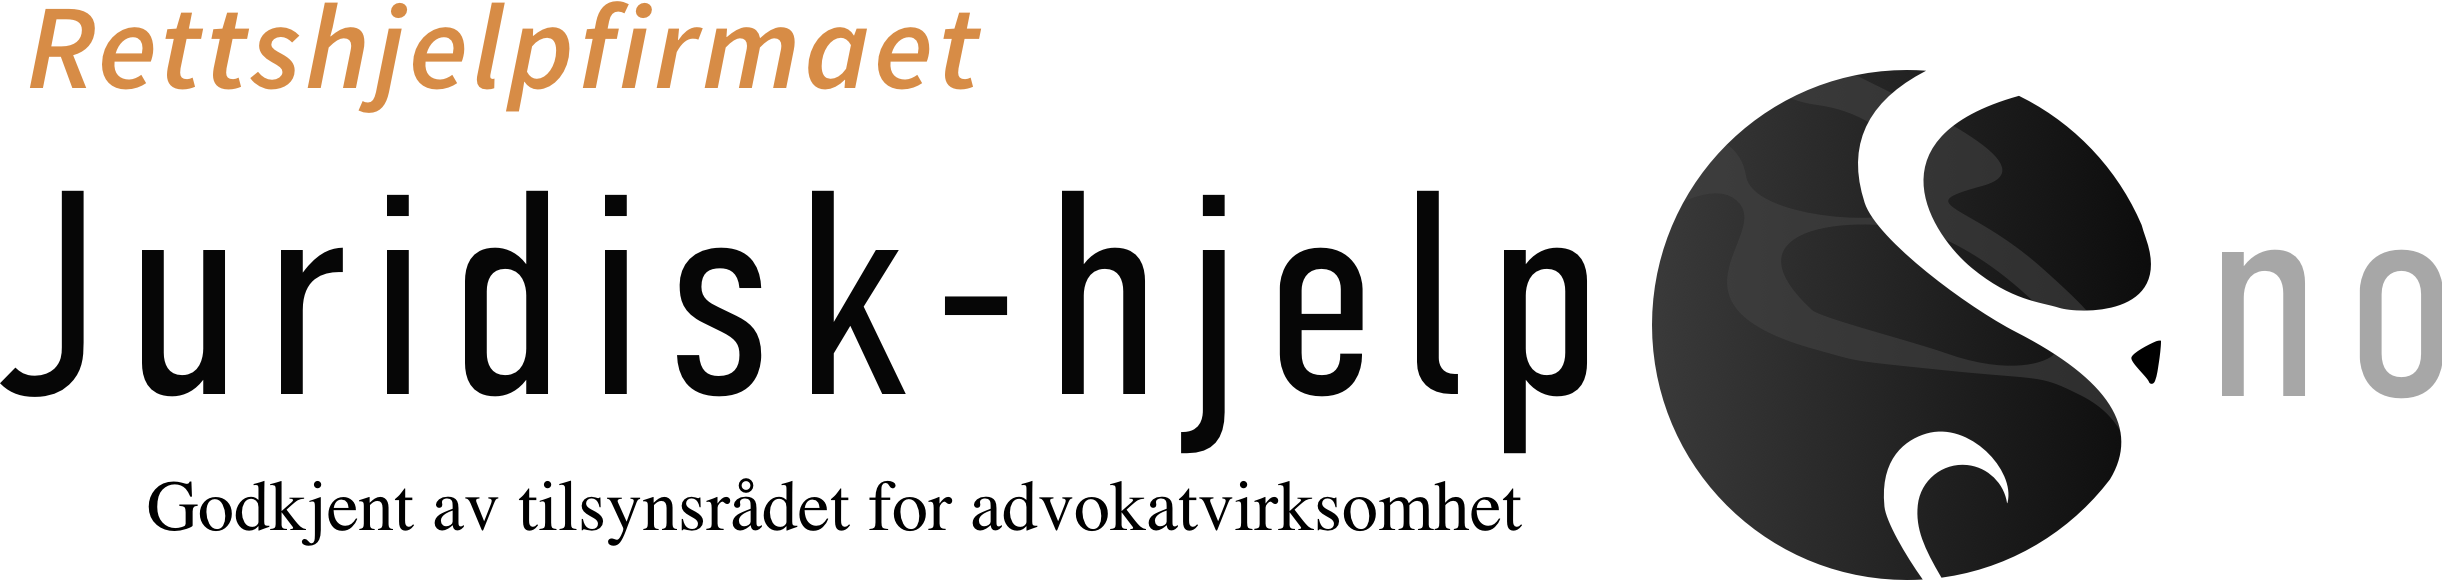 Juridisk-hjelp logo